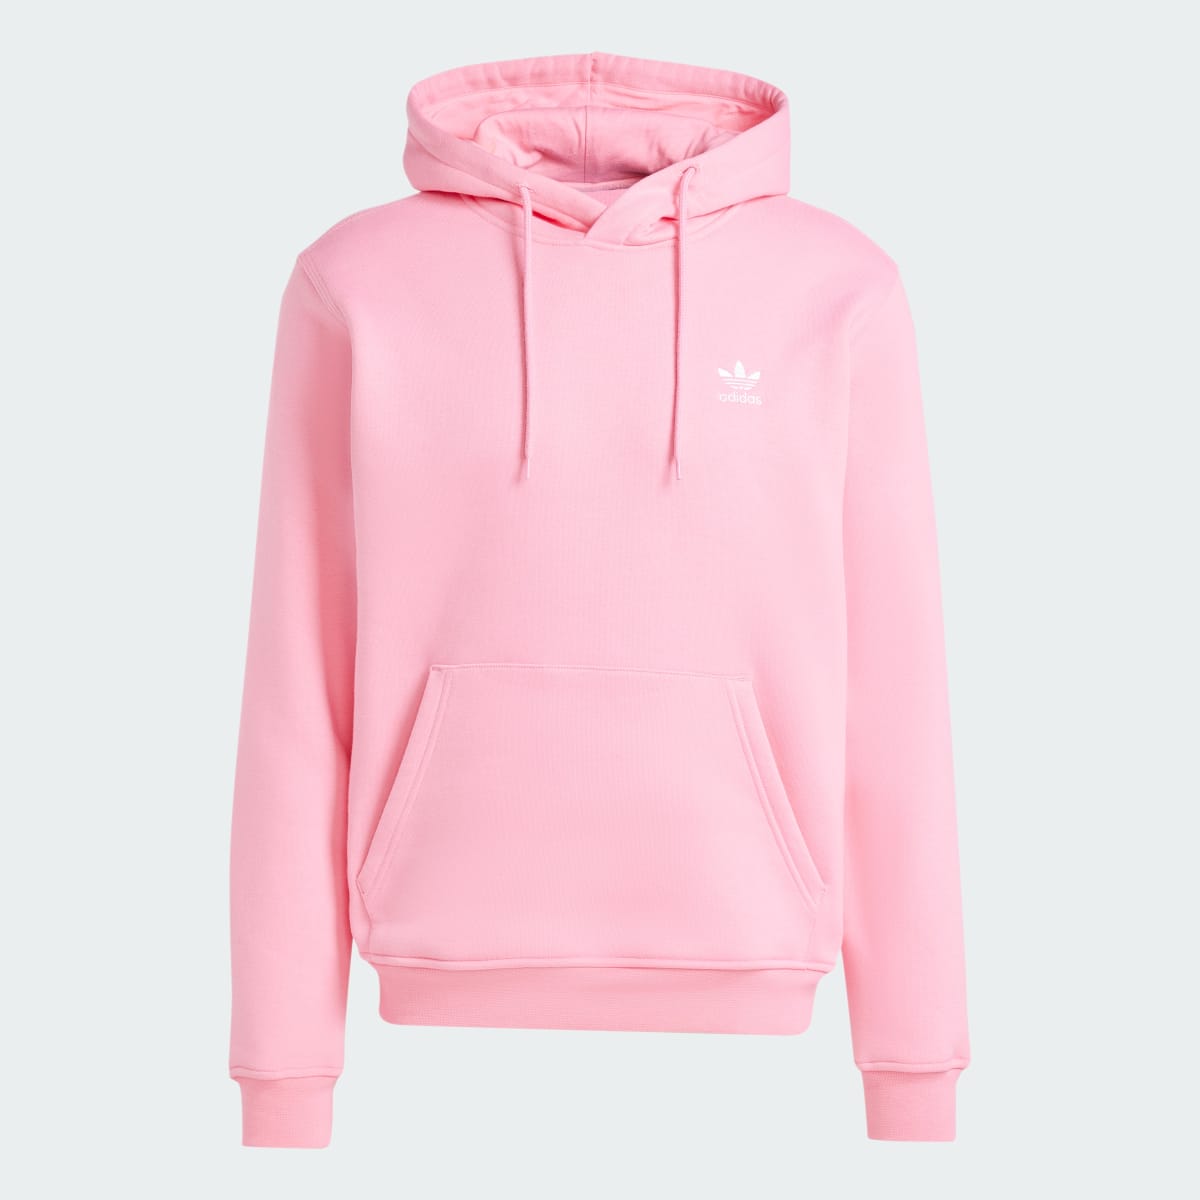 Adidas Pink Hoodie. 5